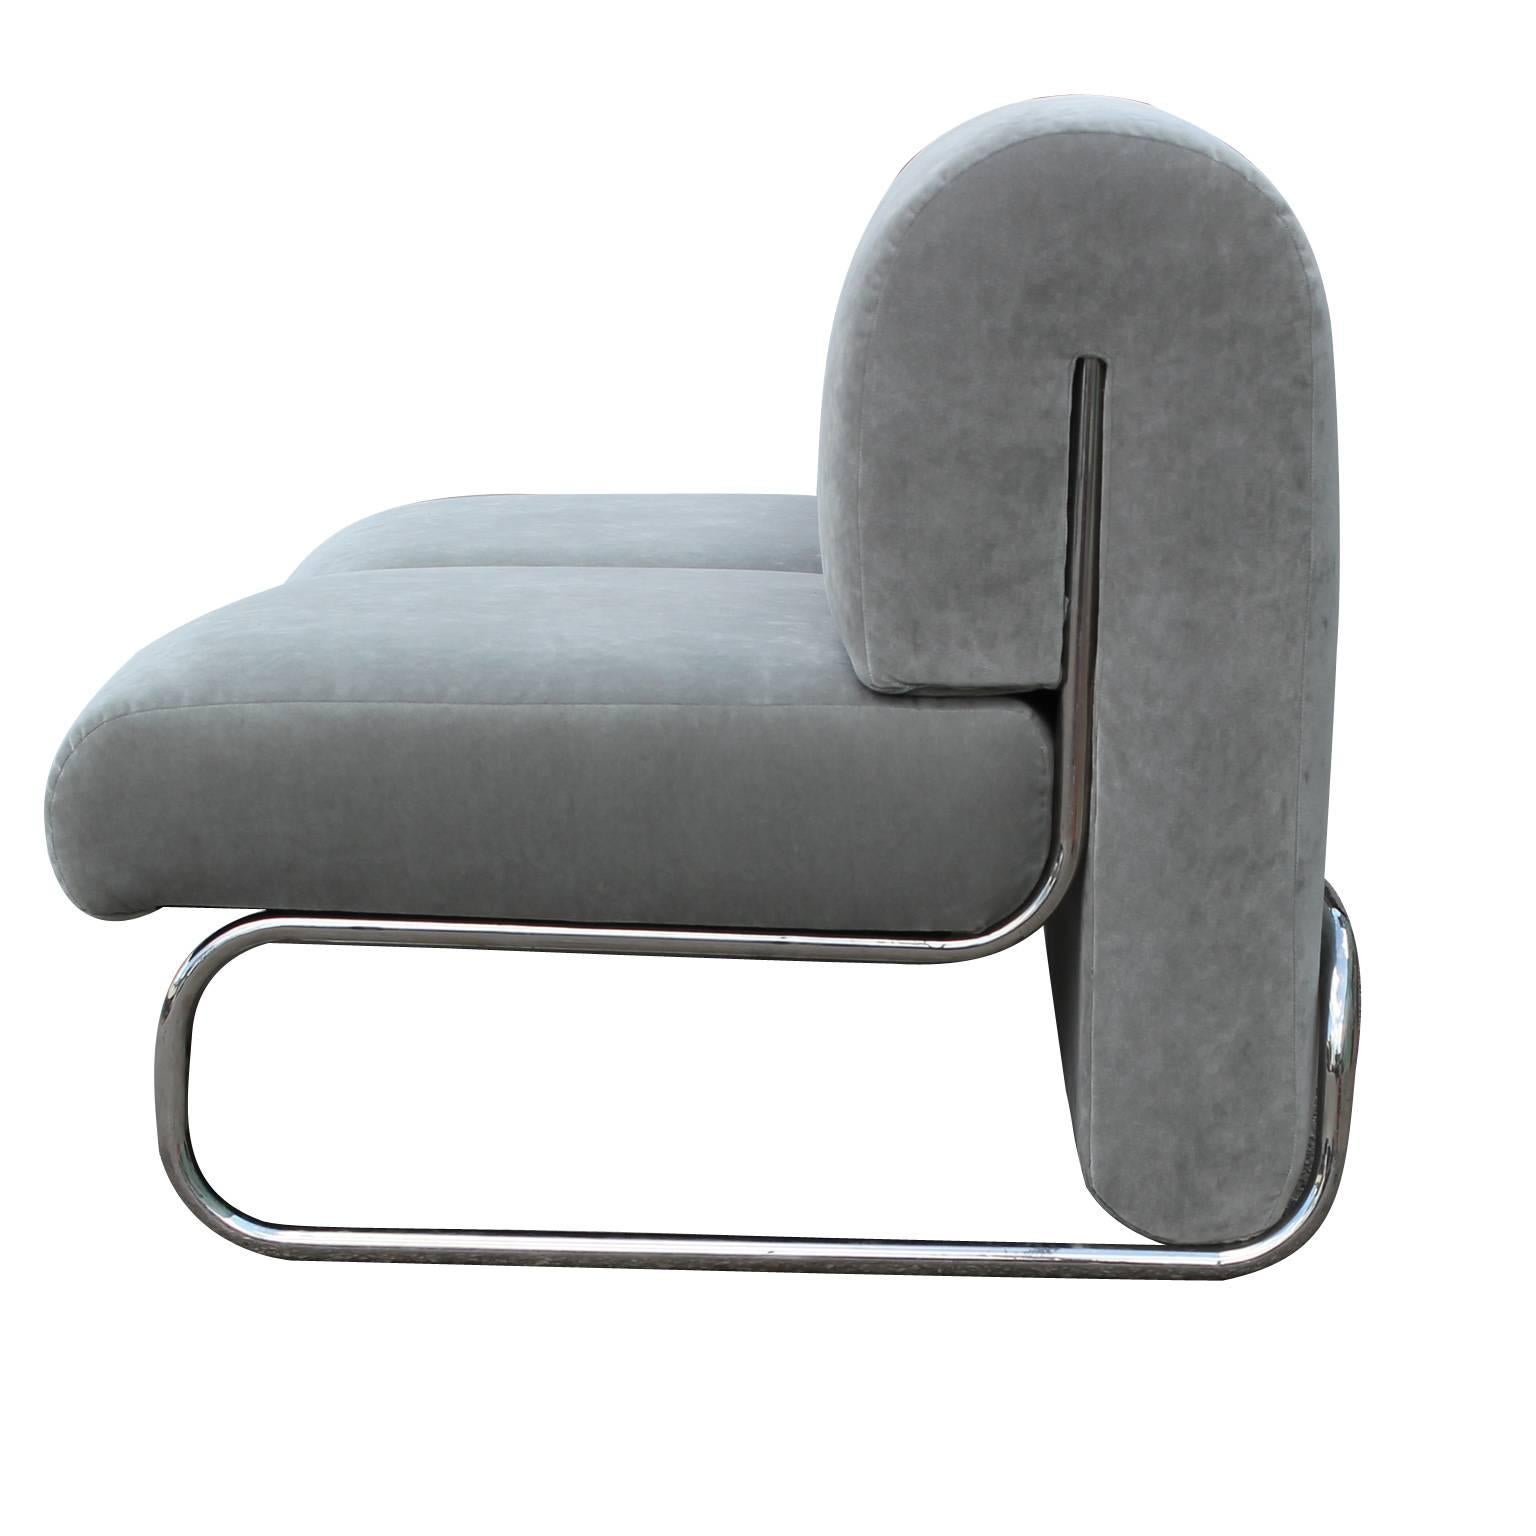 Mid-Century Modern 1970s Italian Modern Loveset Sofa in Soft Grey Velvet with Tubular Chrome